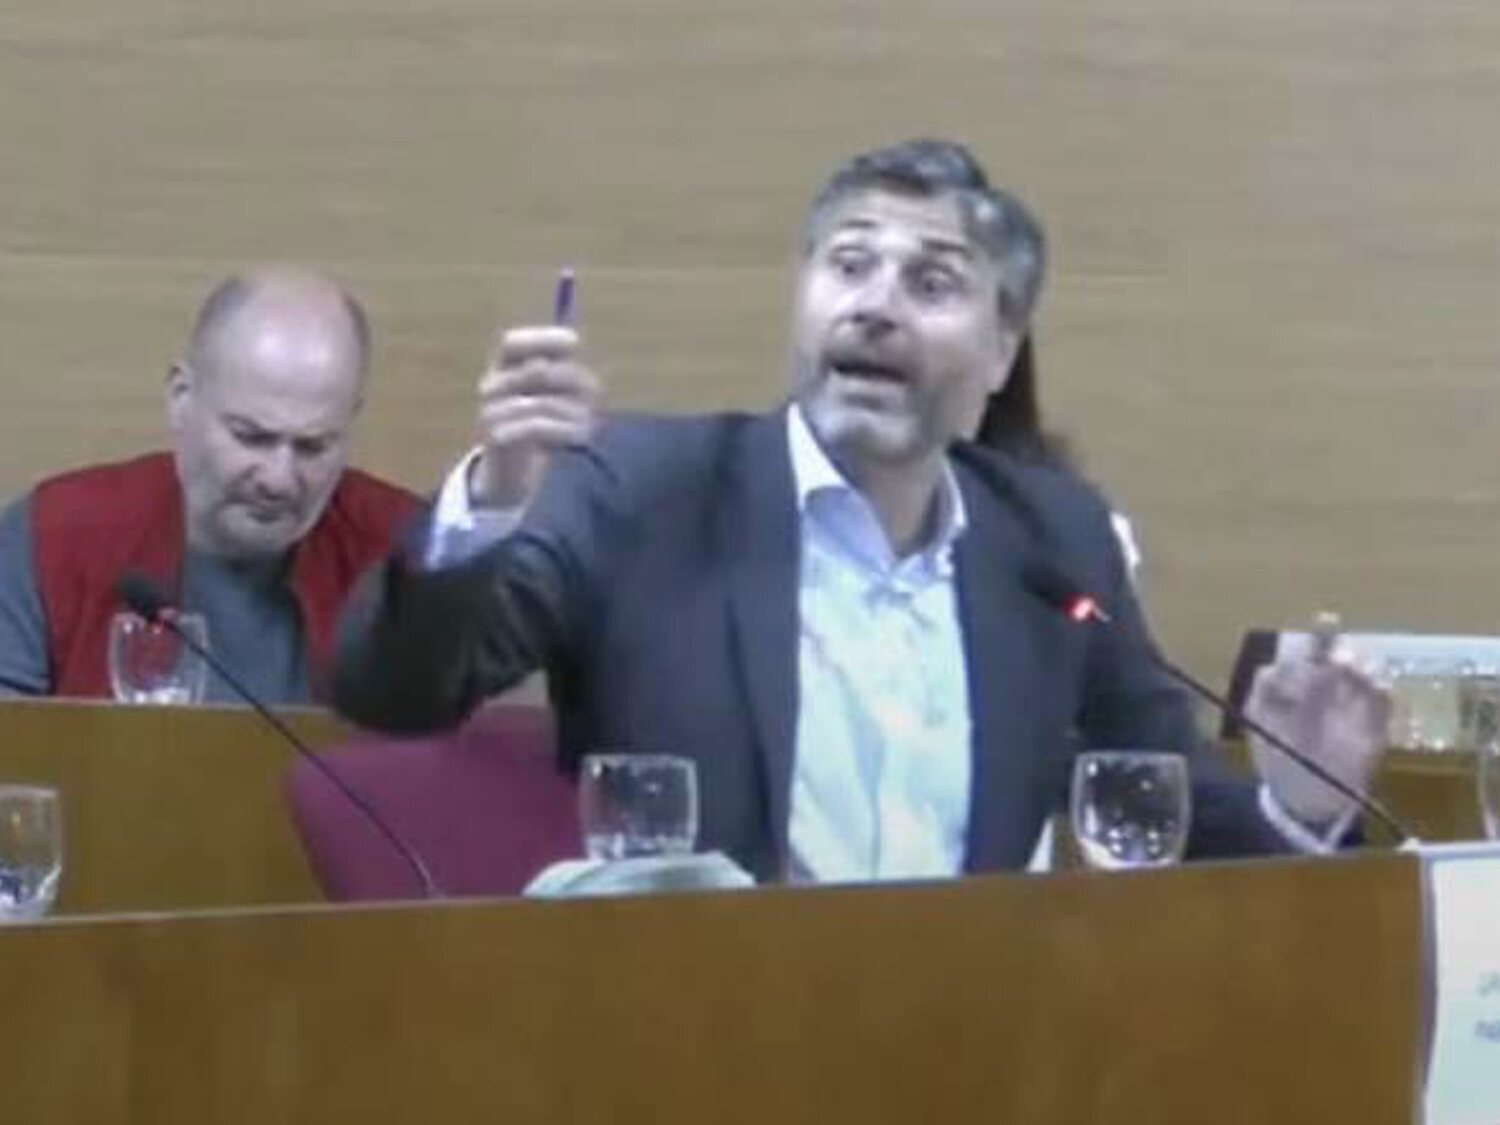 Un concejal del PP de Madrid de Almeida, indignado por las fuentes de agua pública: "Atraen indigentes"